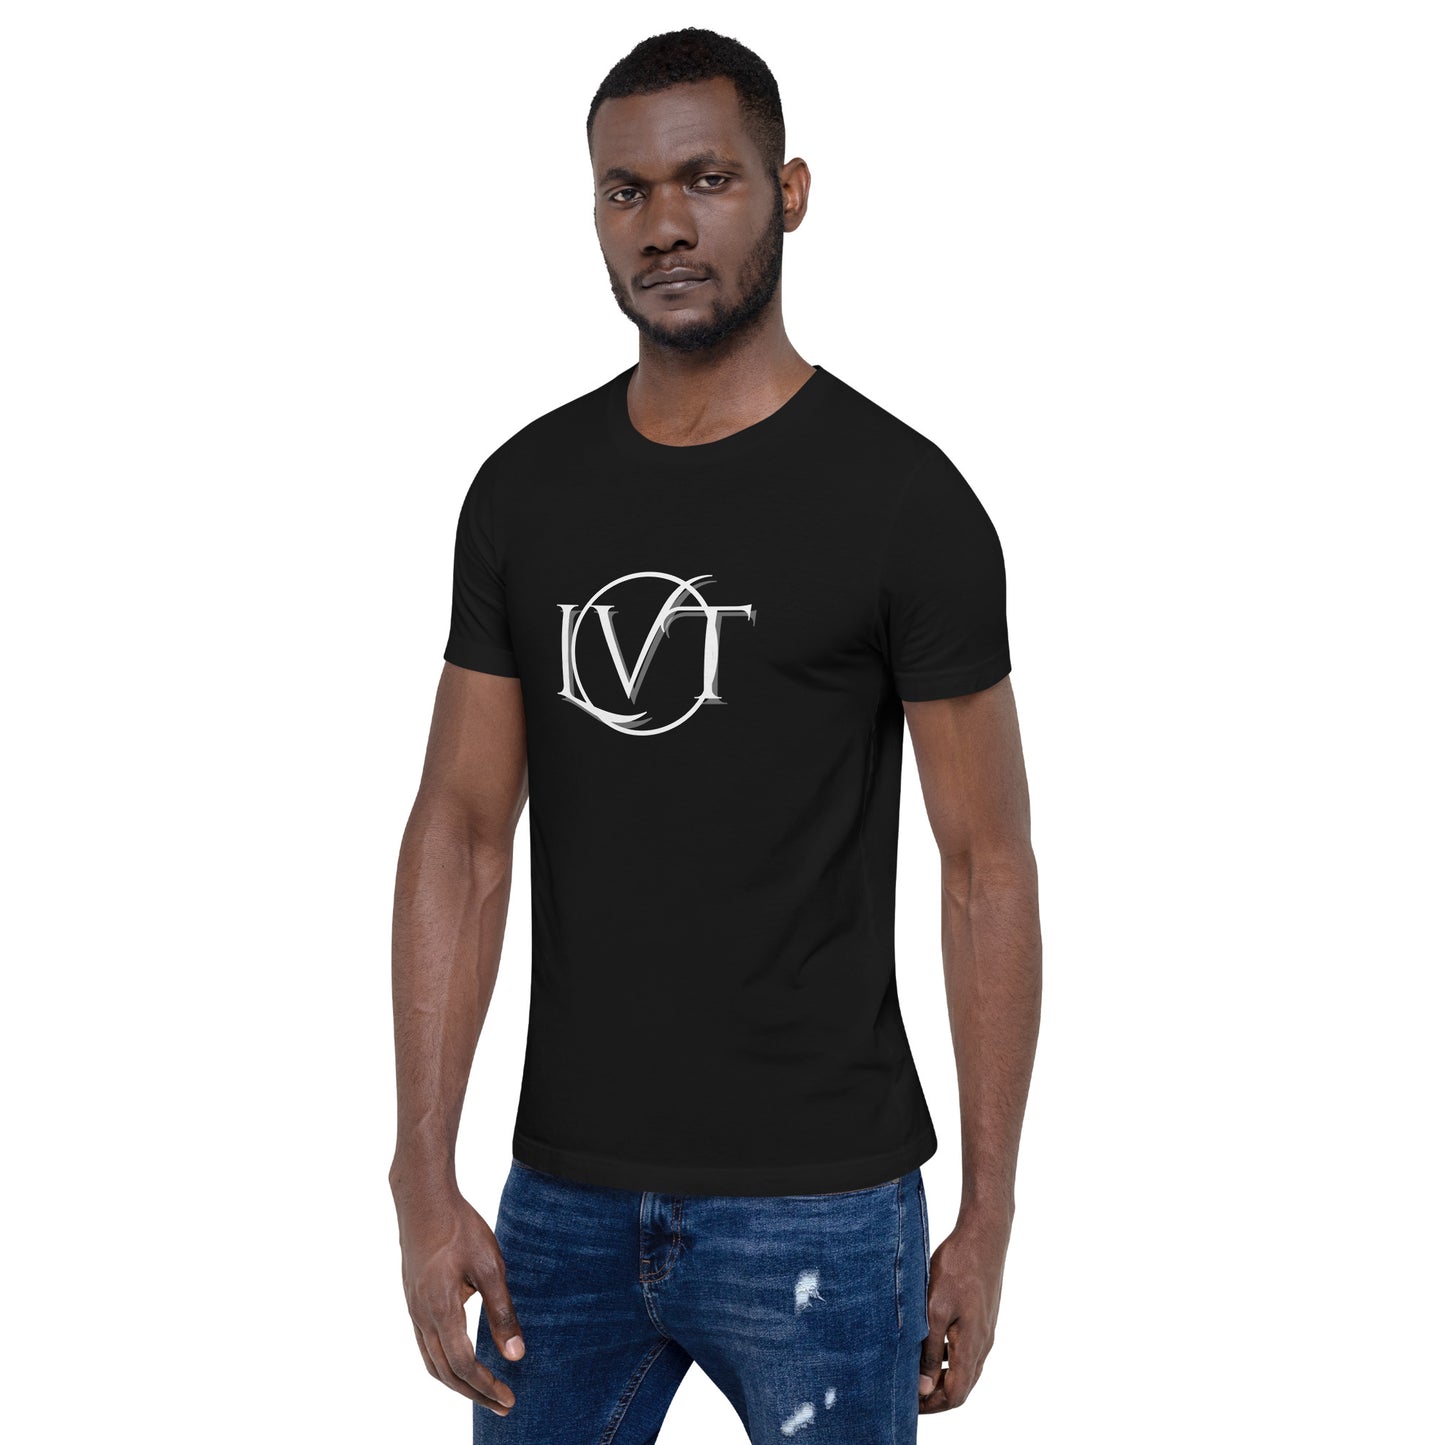 LVT Black and White Logo T-Shirt